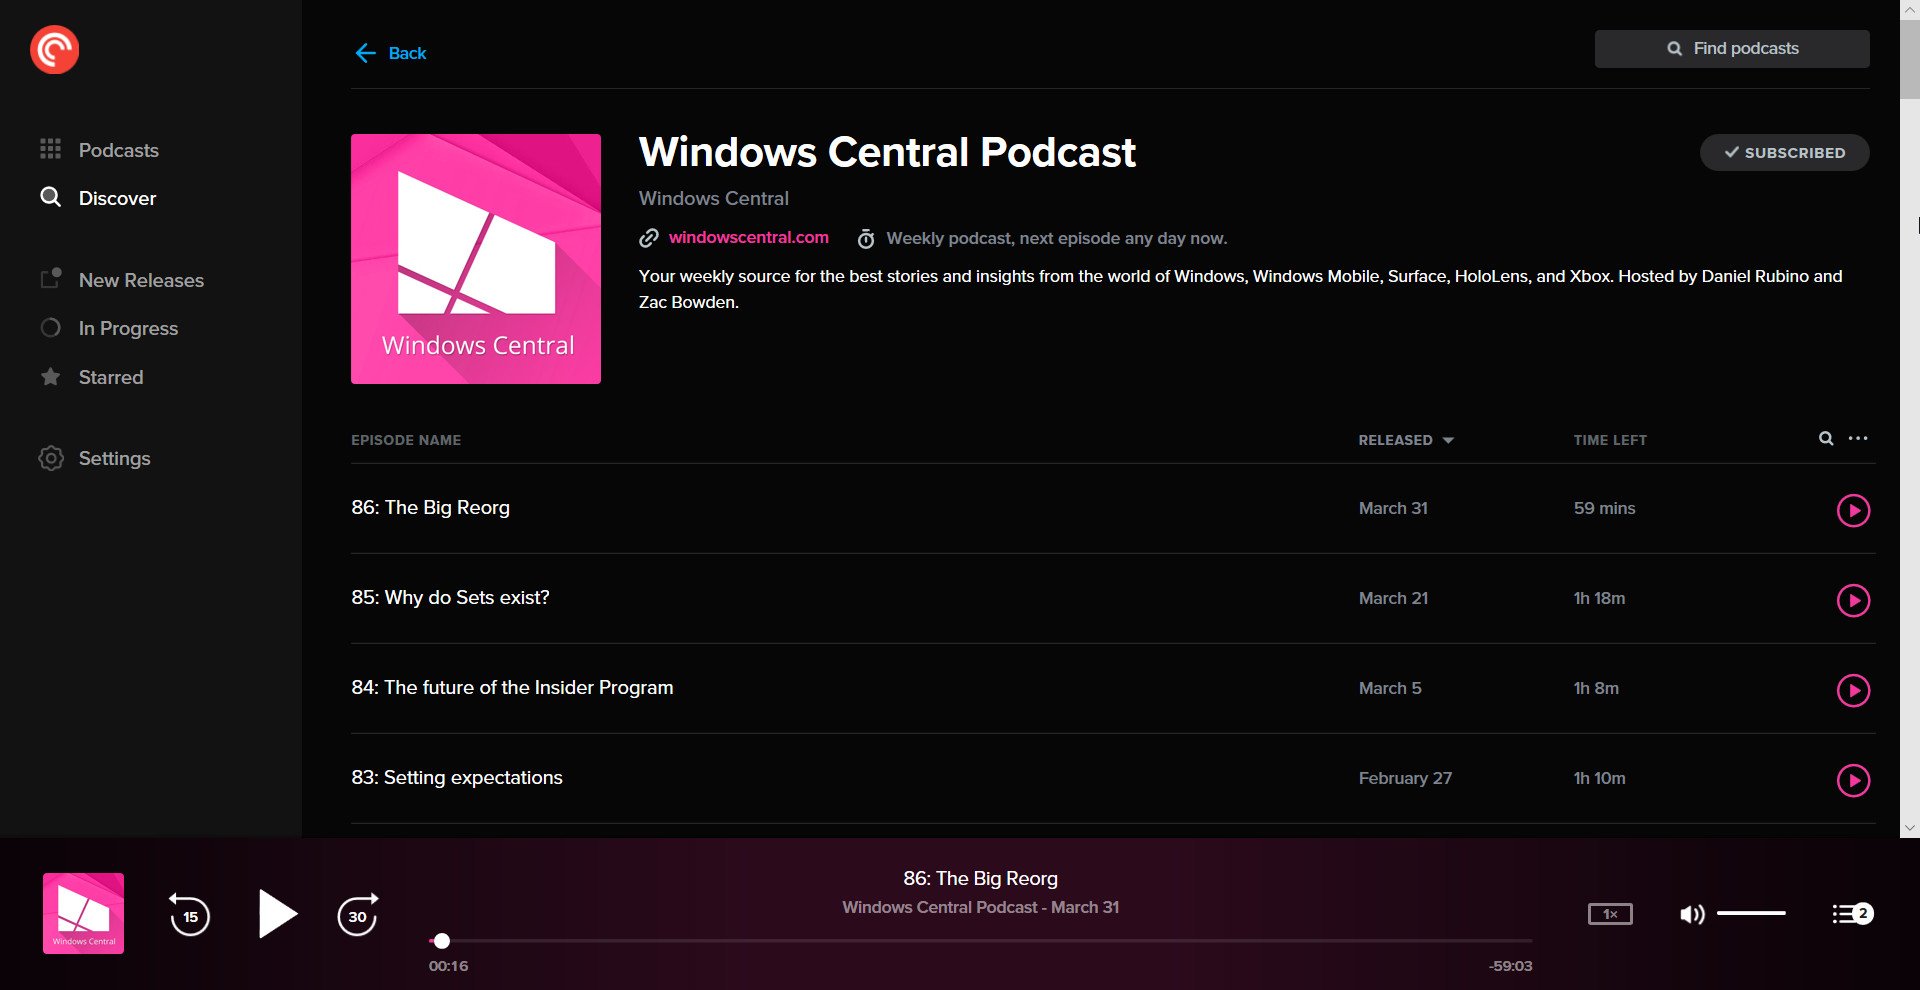 Pocket Casts Desktop for Windows 10 is a fantastic podcast app - Windows Central